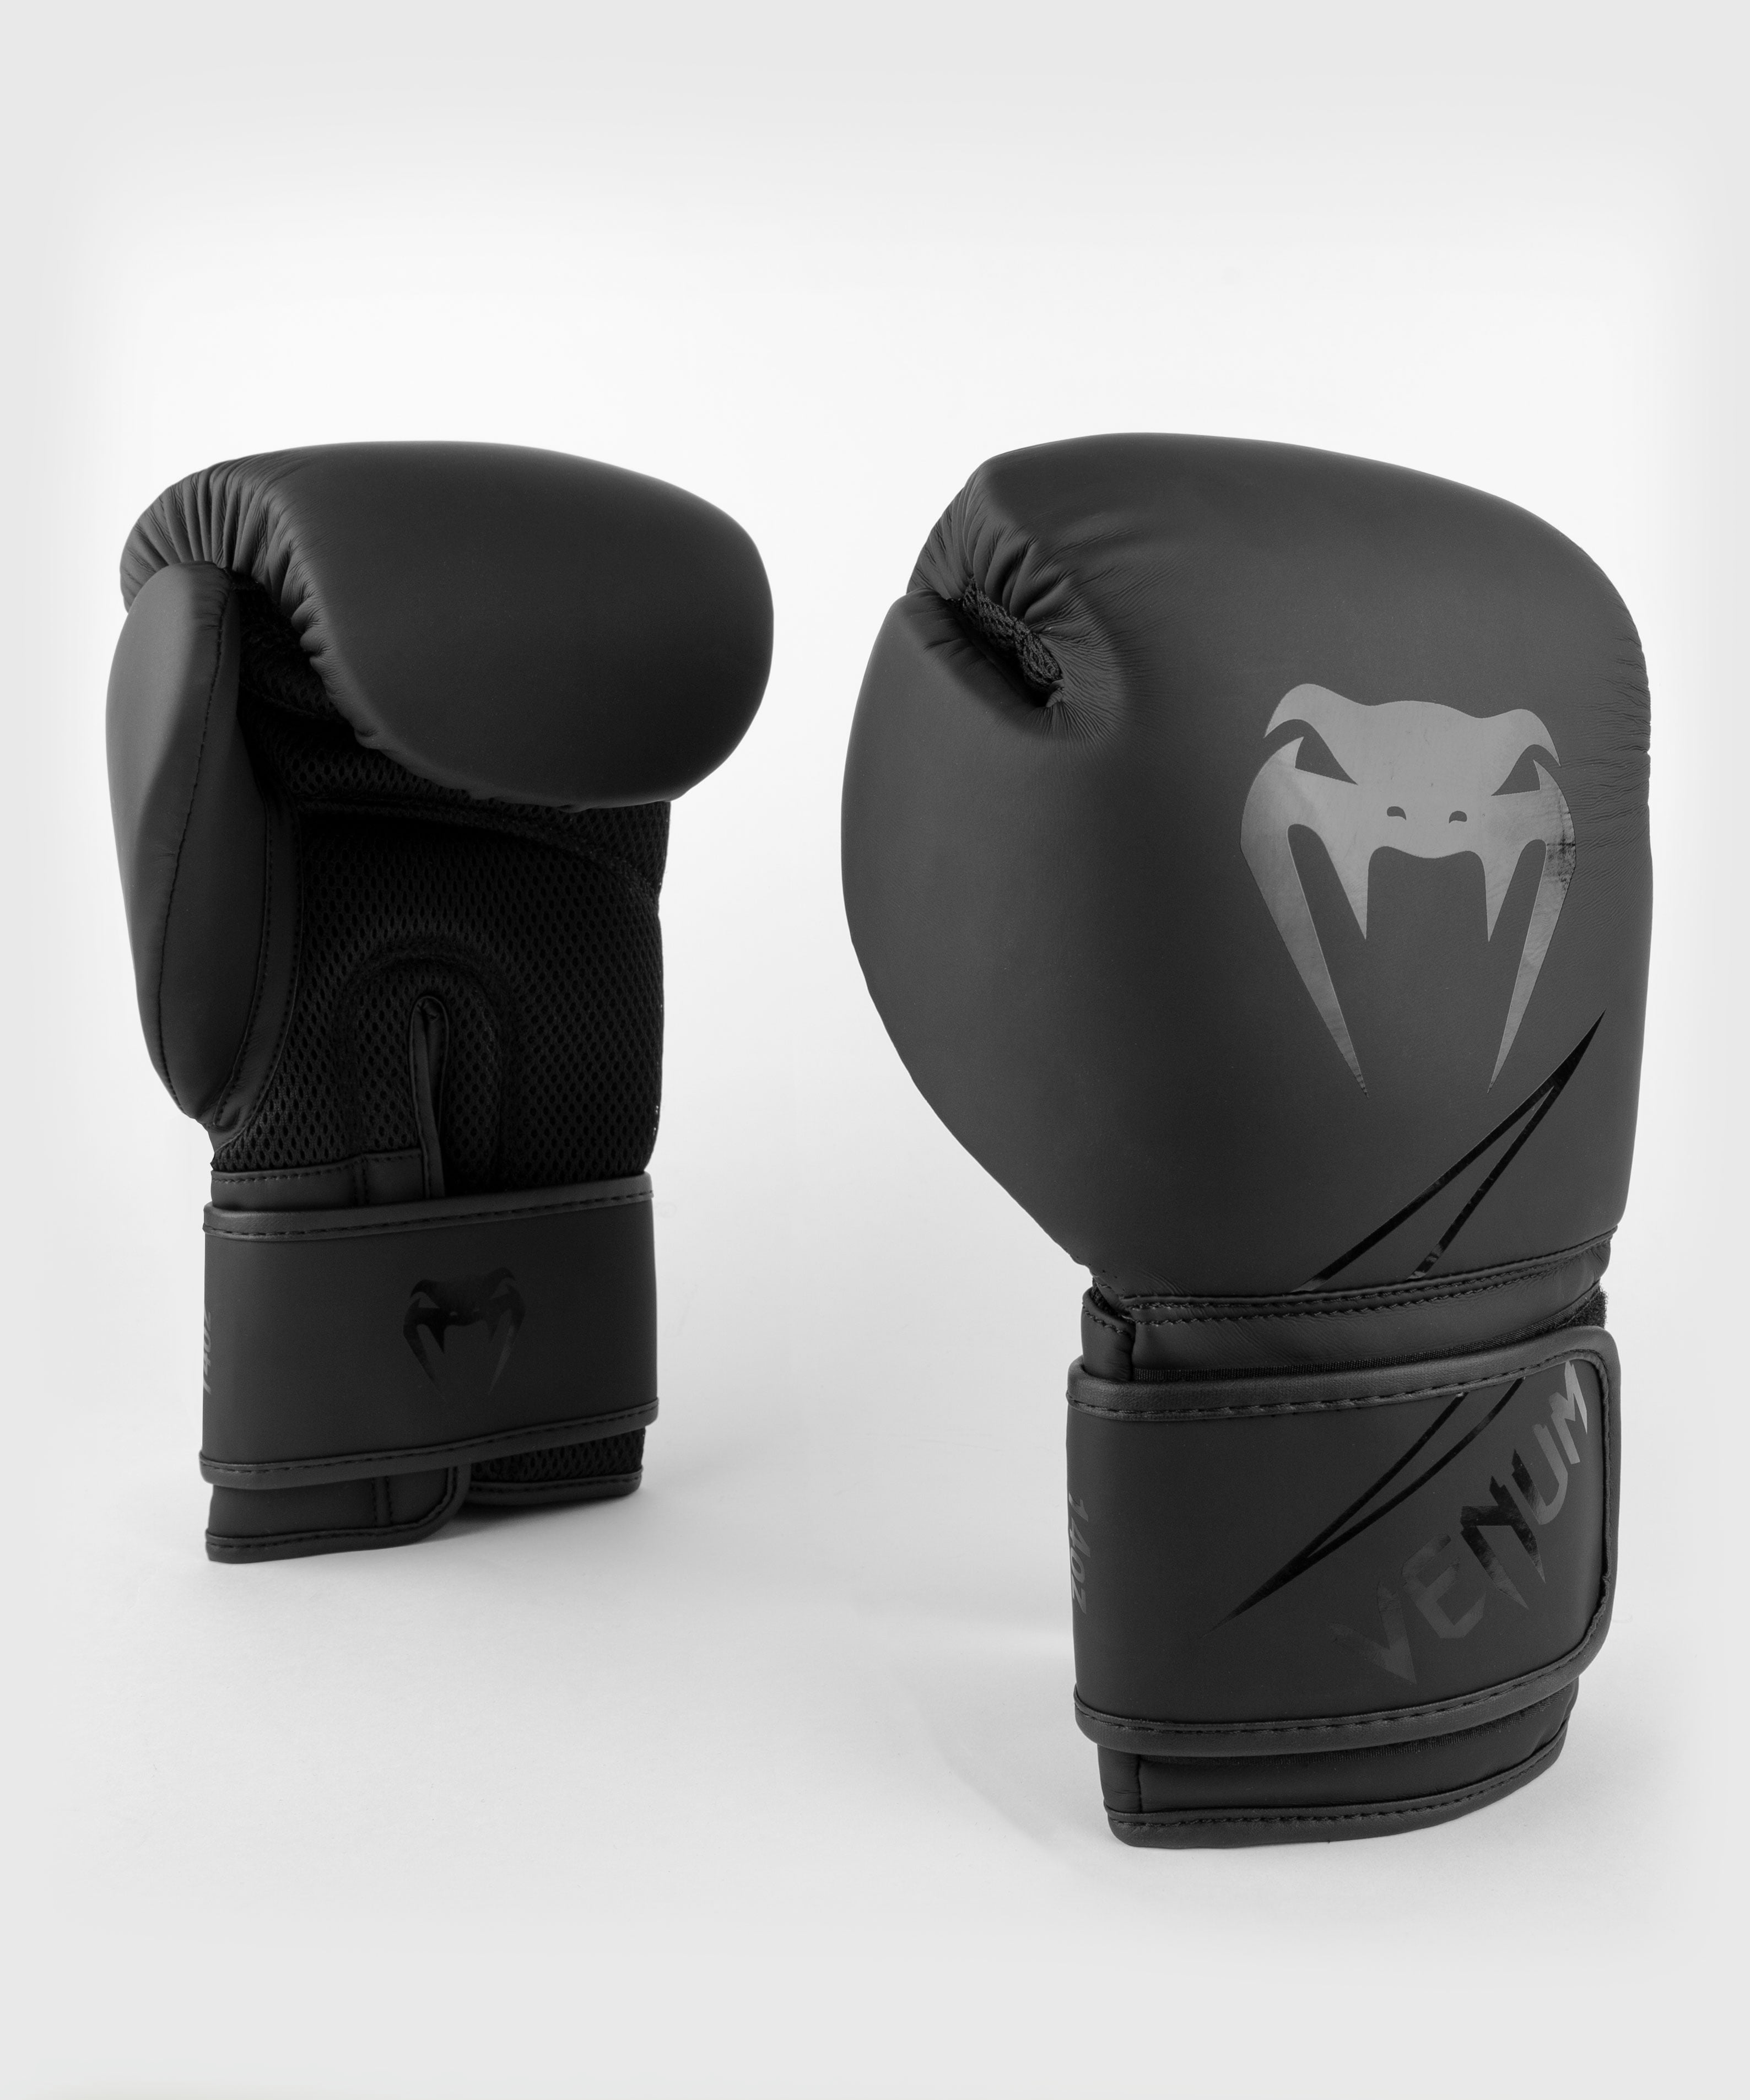 Venum Classic Boxing Gloves - Unisex - Black - 12 oz 